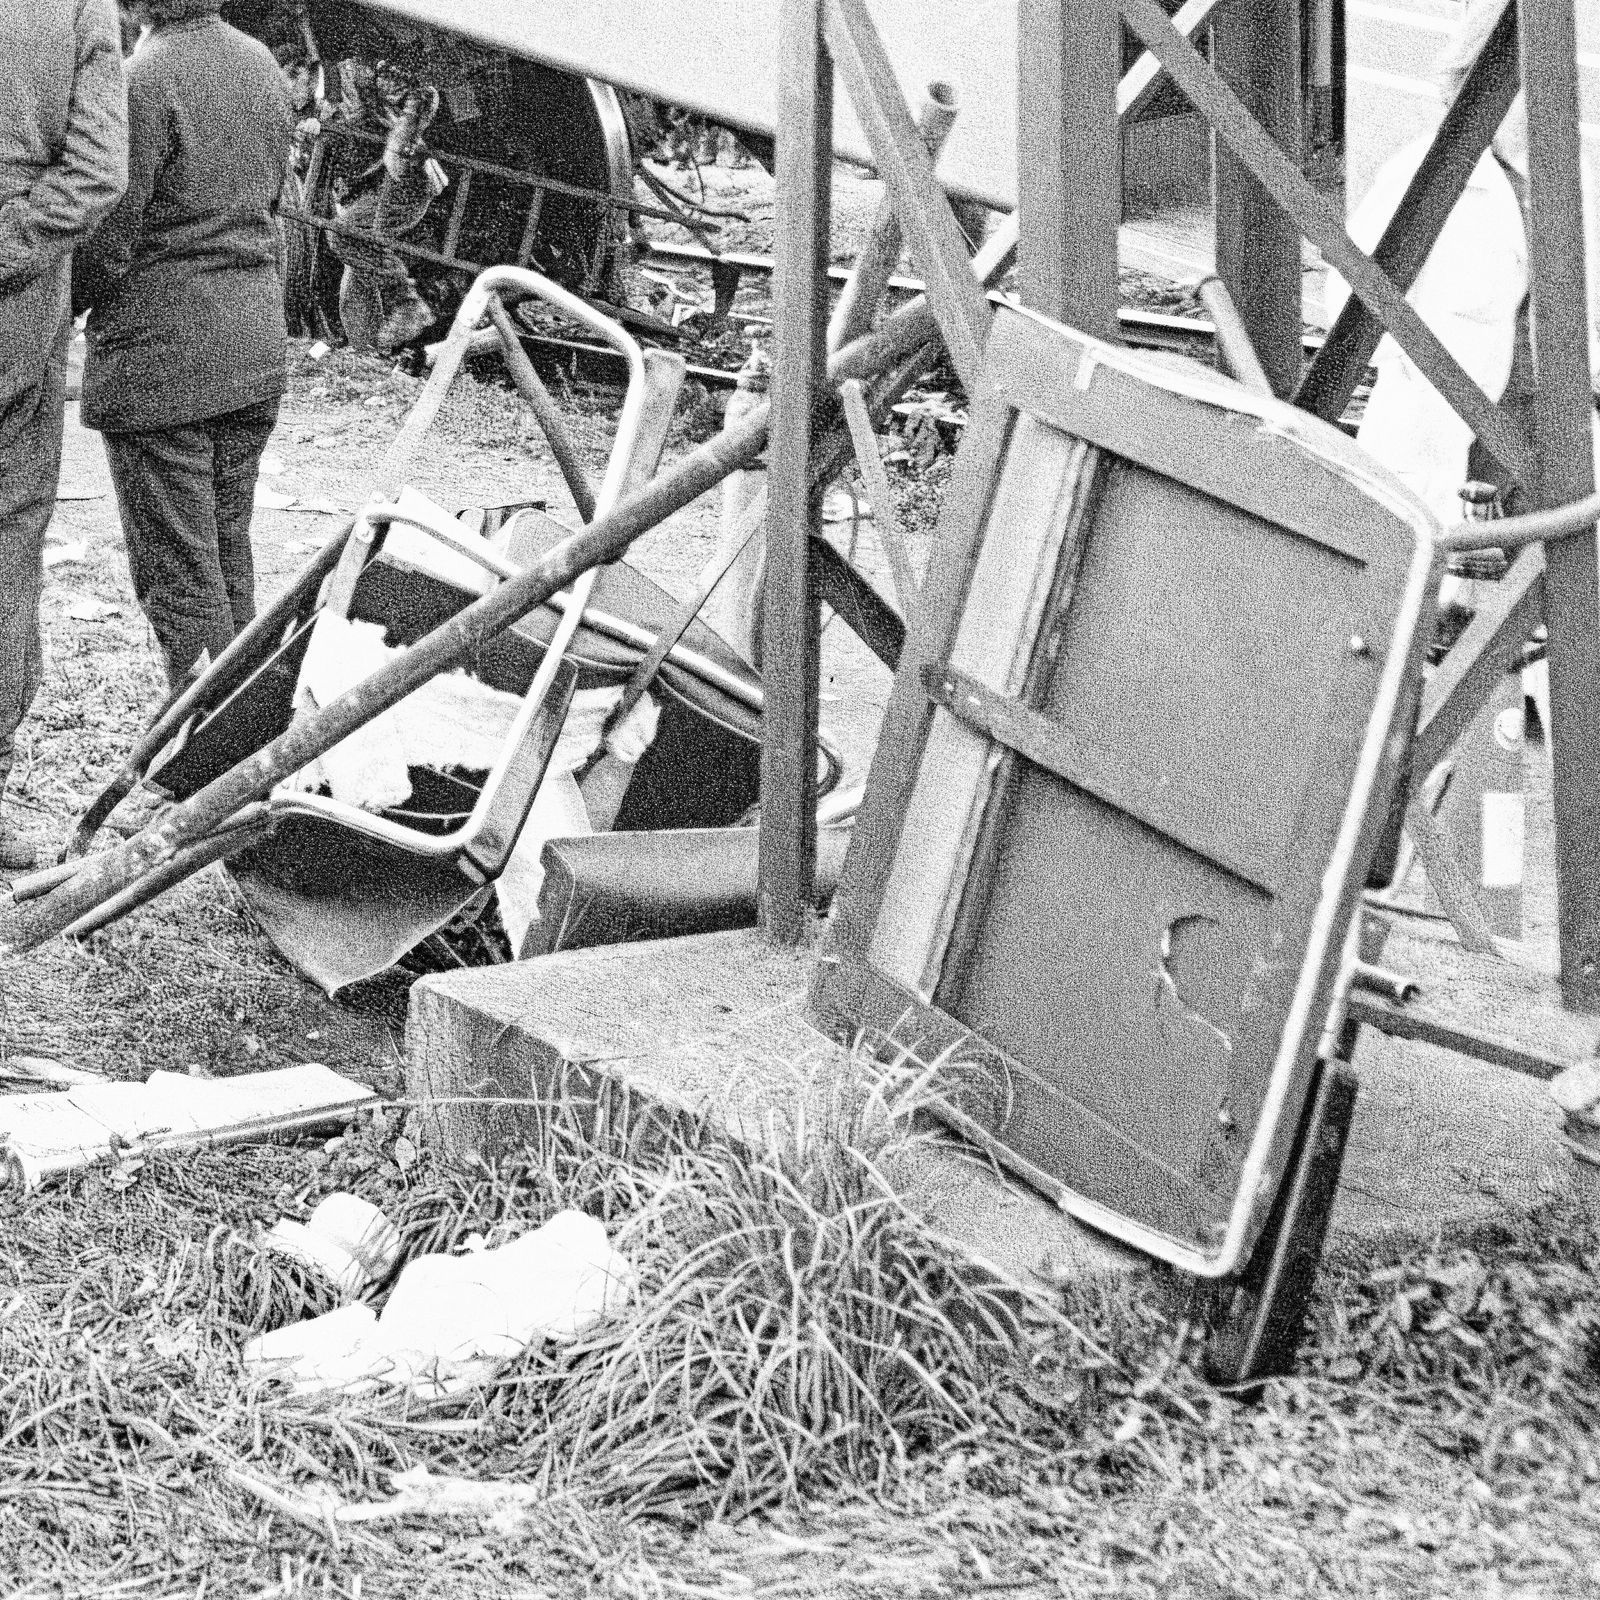 Jednorázové užití / Fotogalerie / Tato smrtící nehoda vlaků v Praze Hloubětíně si před 55 lety vyžádala 13 životů / V